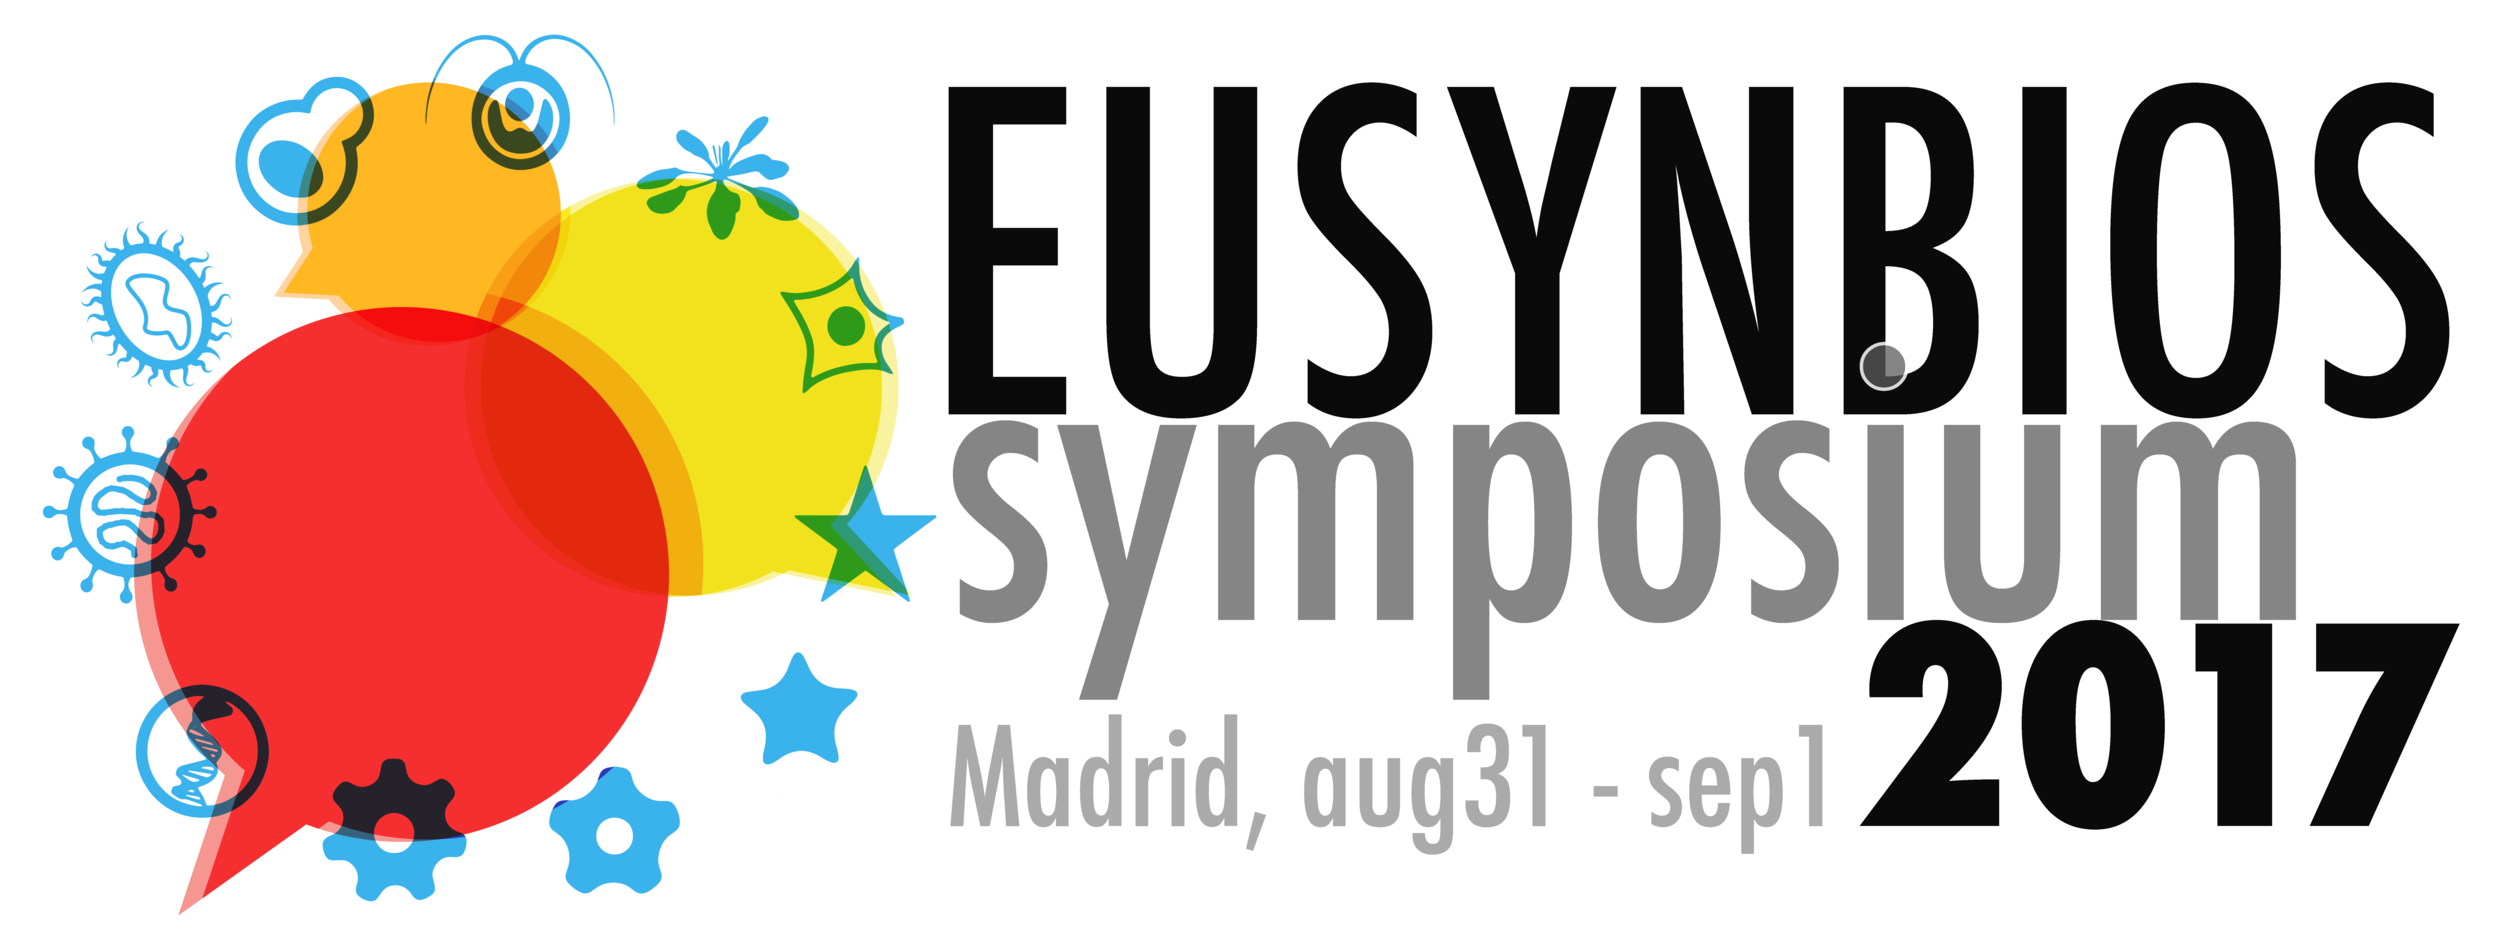 EUSynBioS announces 2017 dates for their annual Symposium 2017 (Aug 31 - Sep 1)